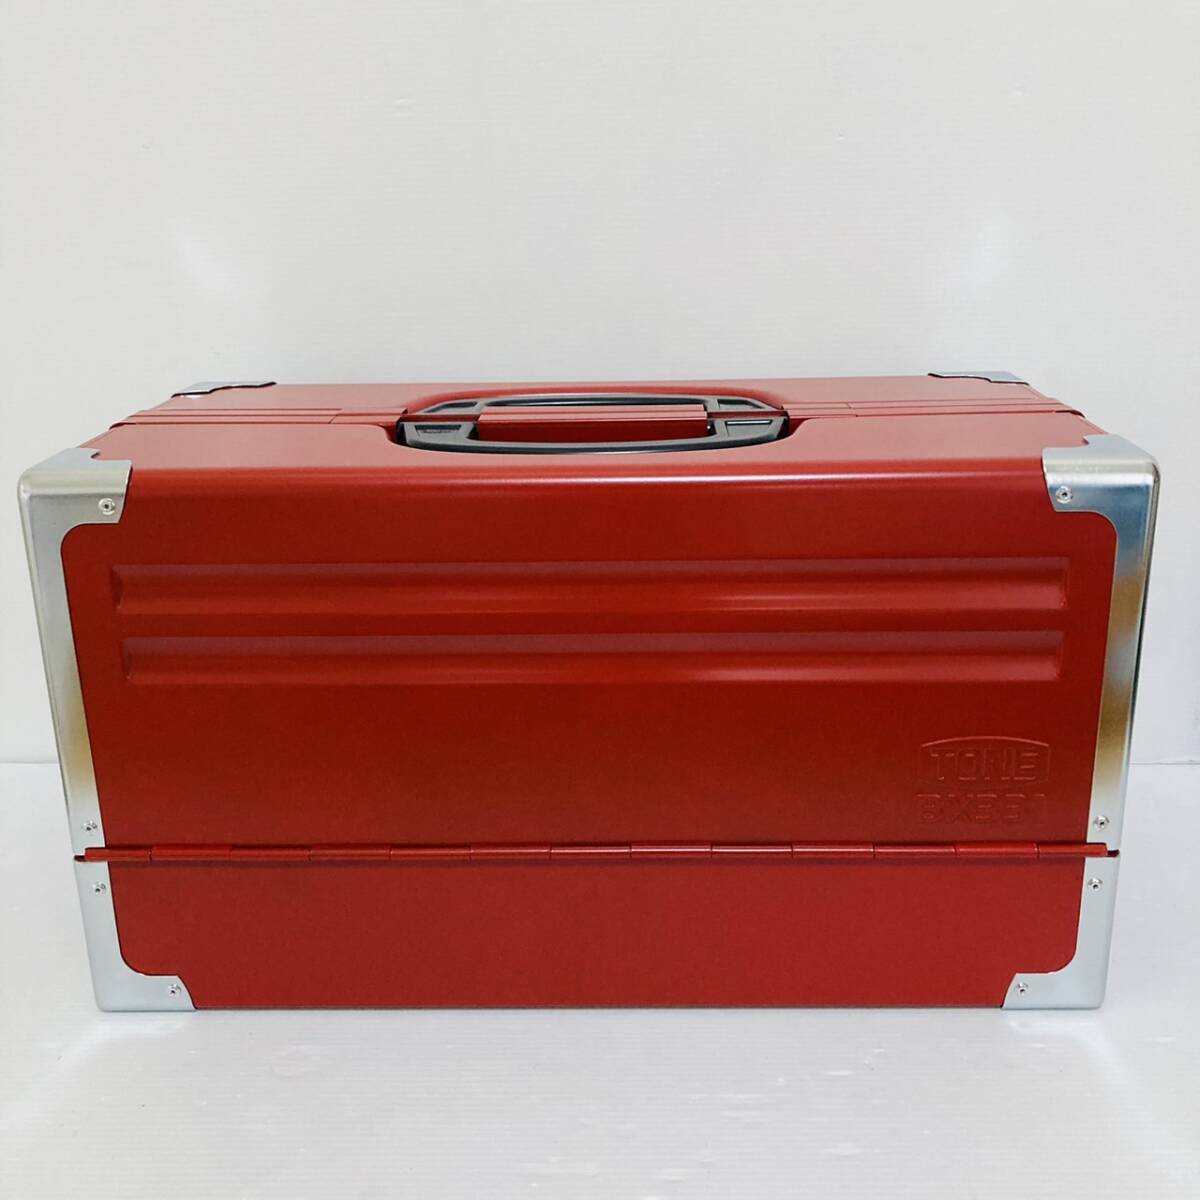 即決送料無料!!未使用品 TONE トネ BX331 赤 RED レッド 3段両開き ツールケース 工具箱 道具箱 携行型/Y051-05_画像2